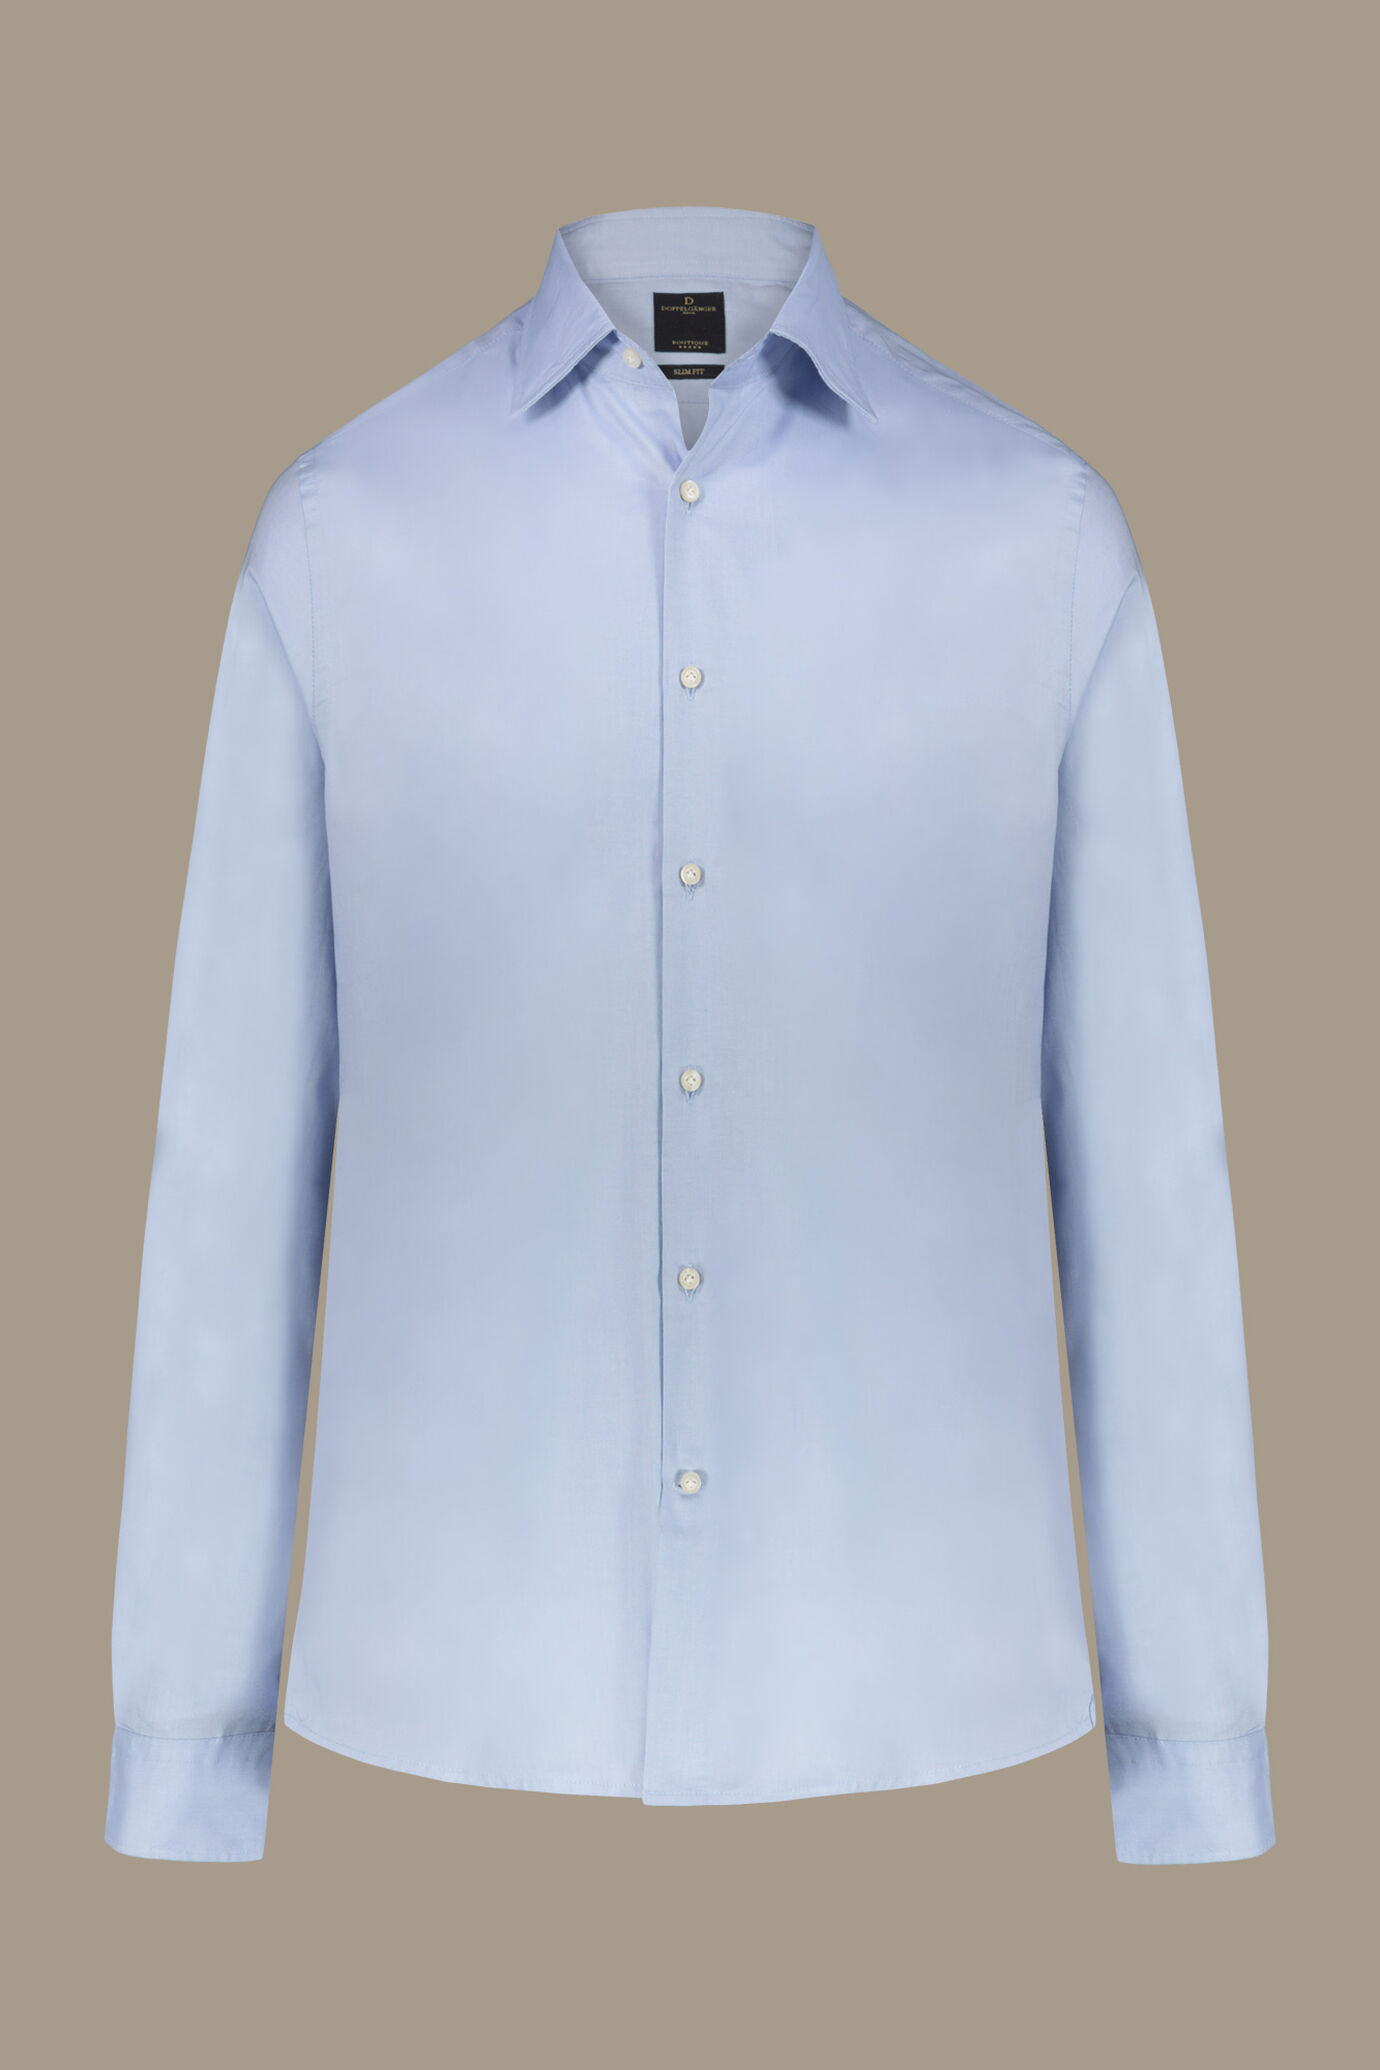 Camicia classica lavata uomo 100% cotone collo francese tessuto pinpoint image number 0